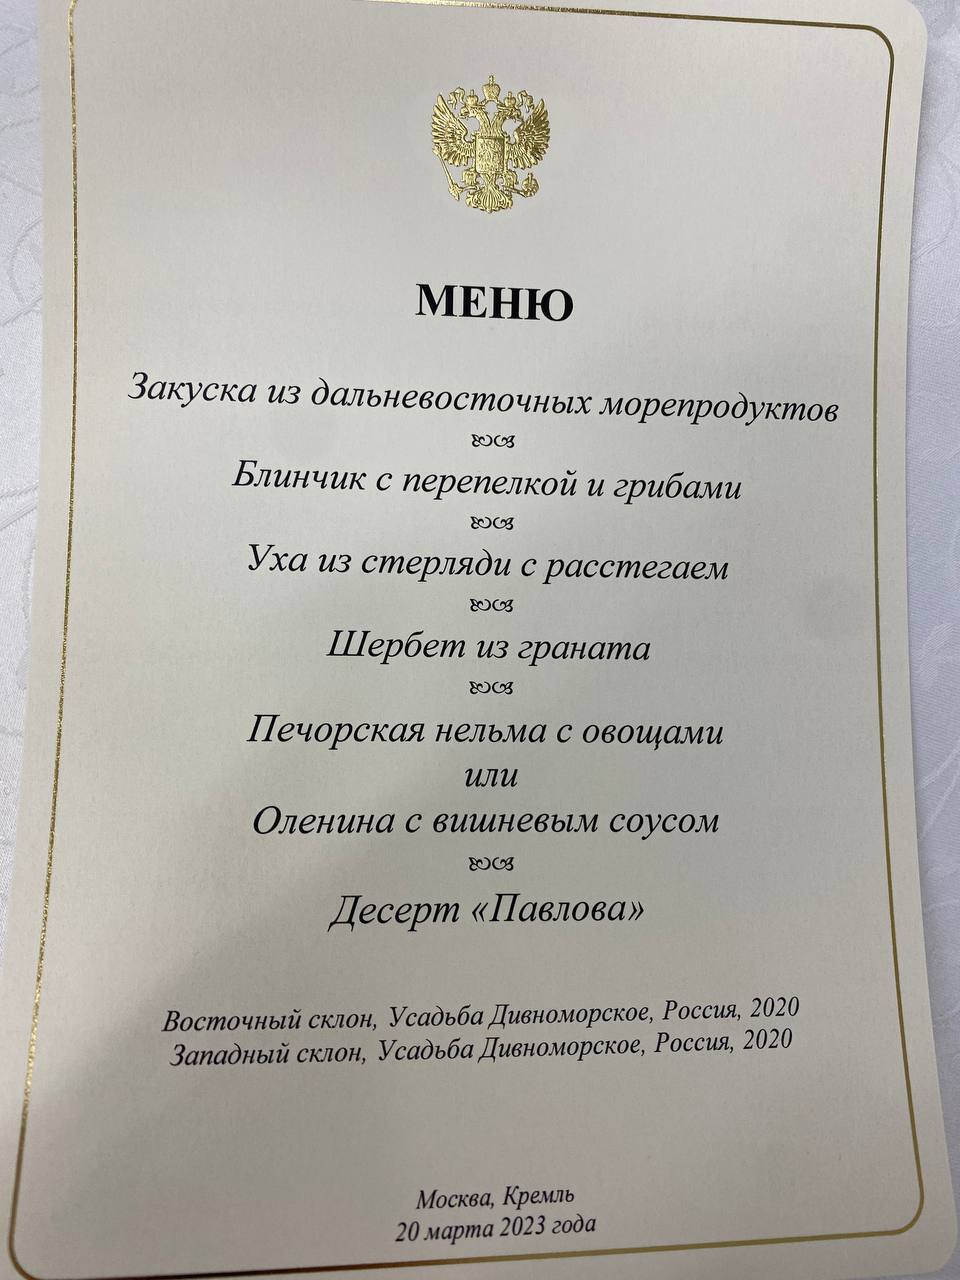 На десерт – "Павлова": стало відомо, чим пригощали Сі Цзіньпіна в Москві. Фото